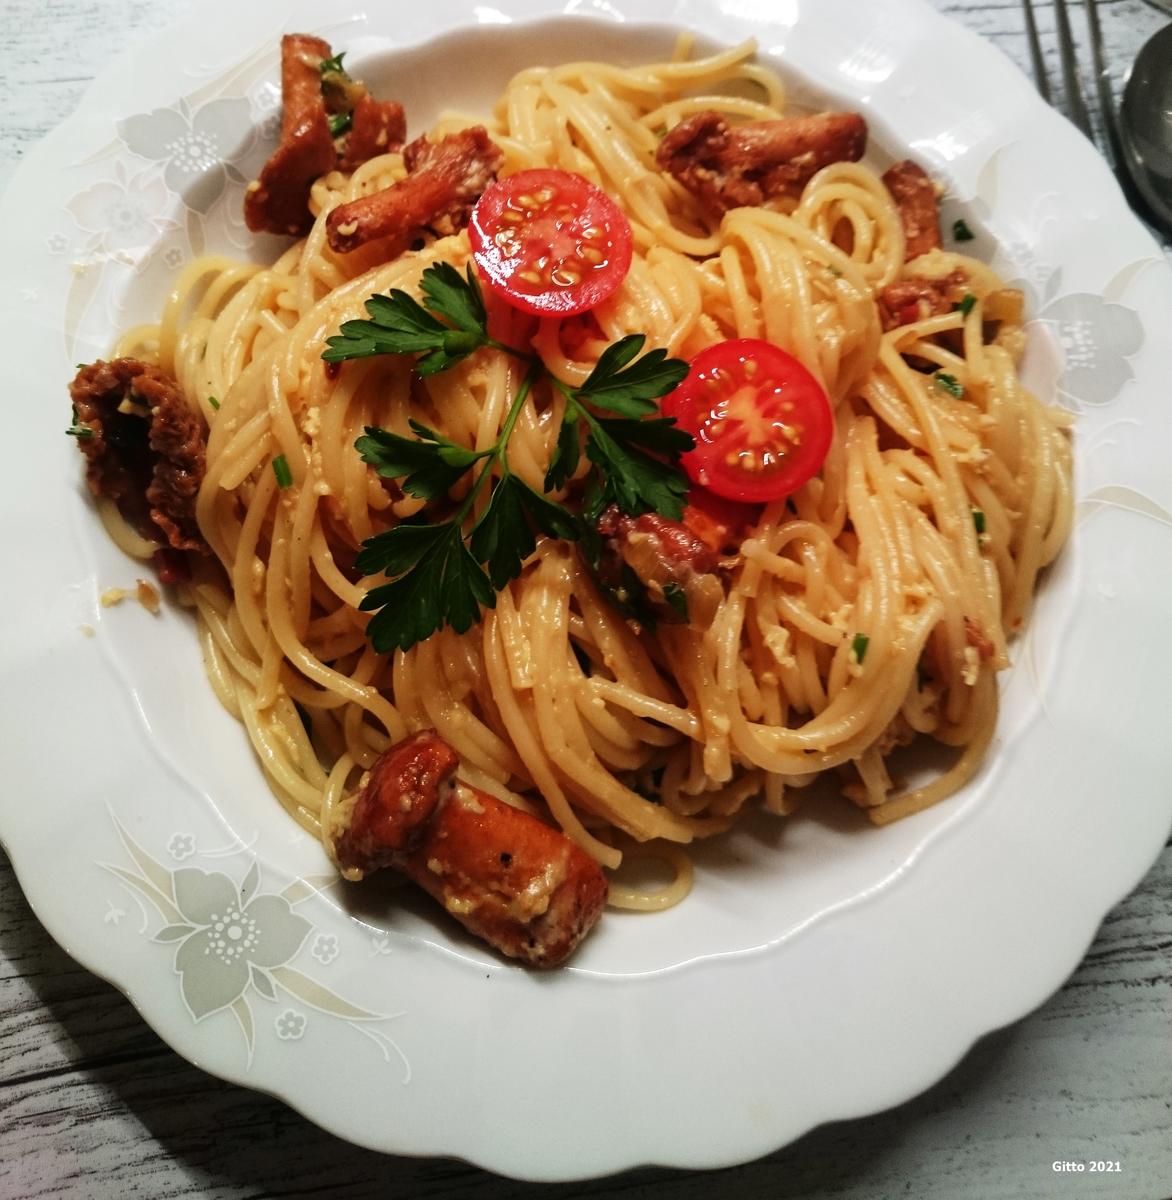 Spaghetti mit Pfifferlingscarbonara nach meiner Art. - Rezept - Bild Nr. 13702